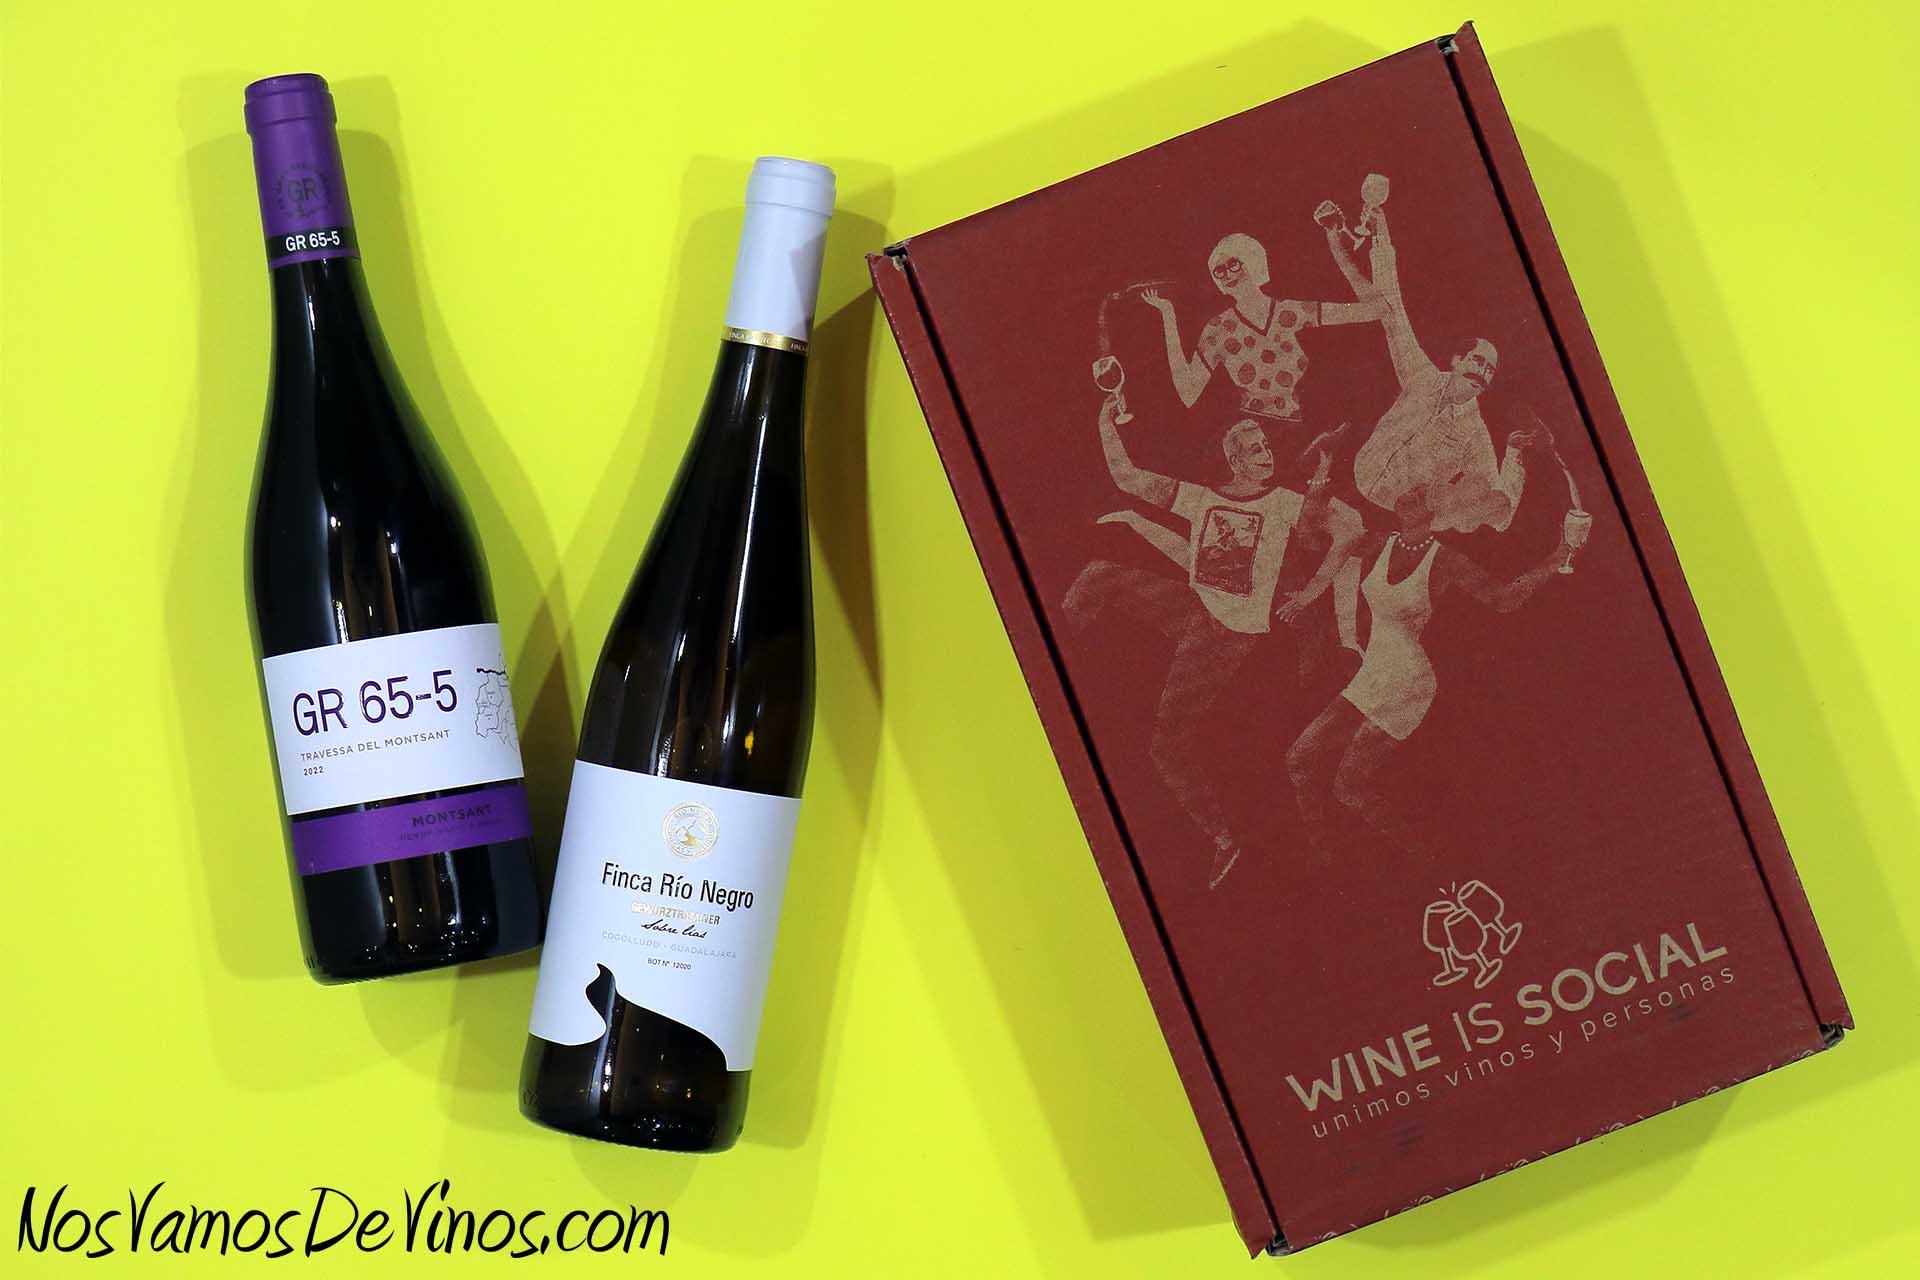 Wine is Social Winelovers Club promoción de vinos baratos